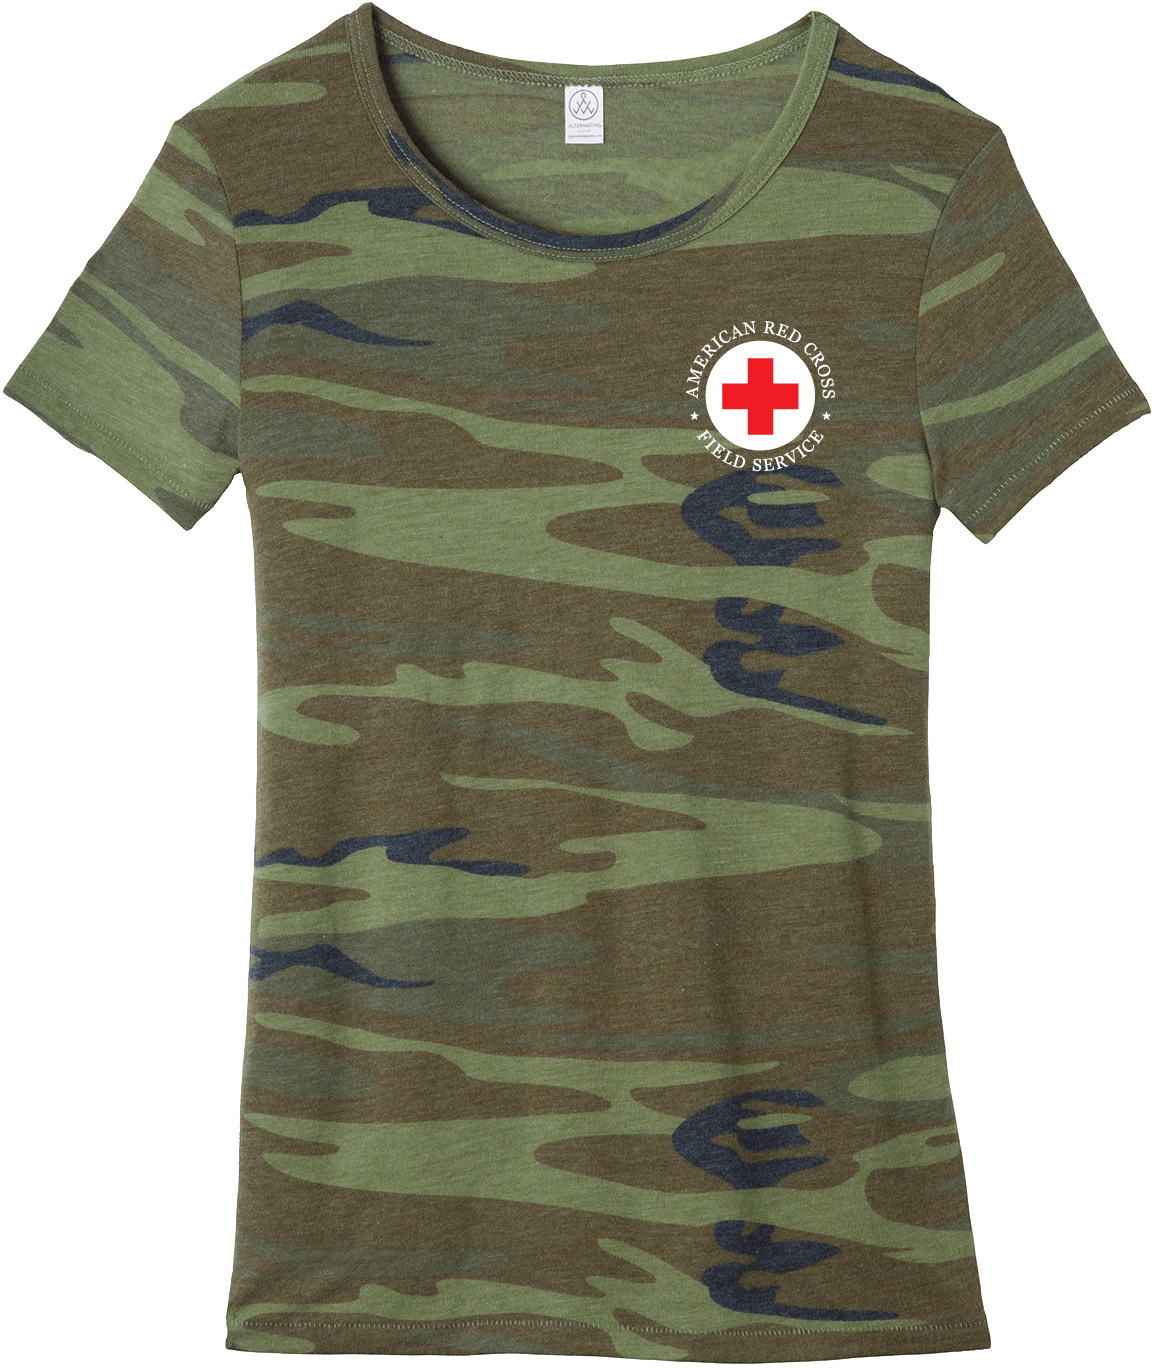 Camo Tshirt Red Cross Logo